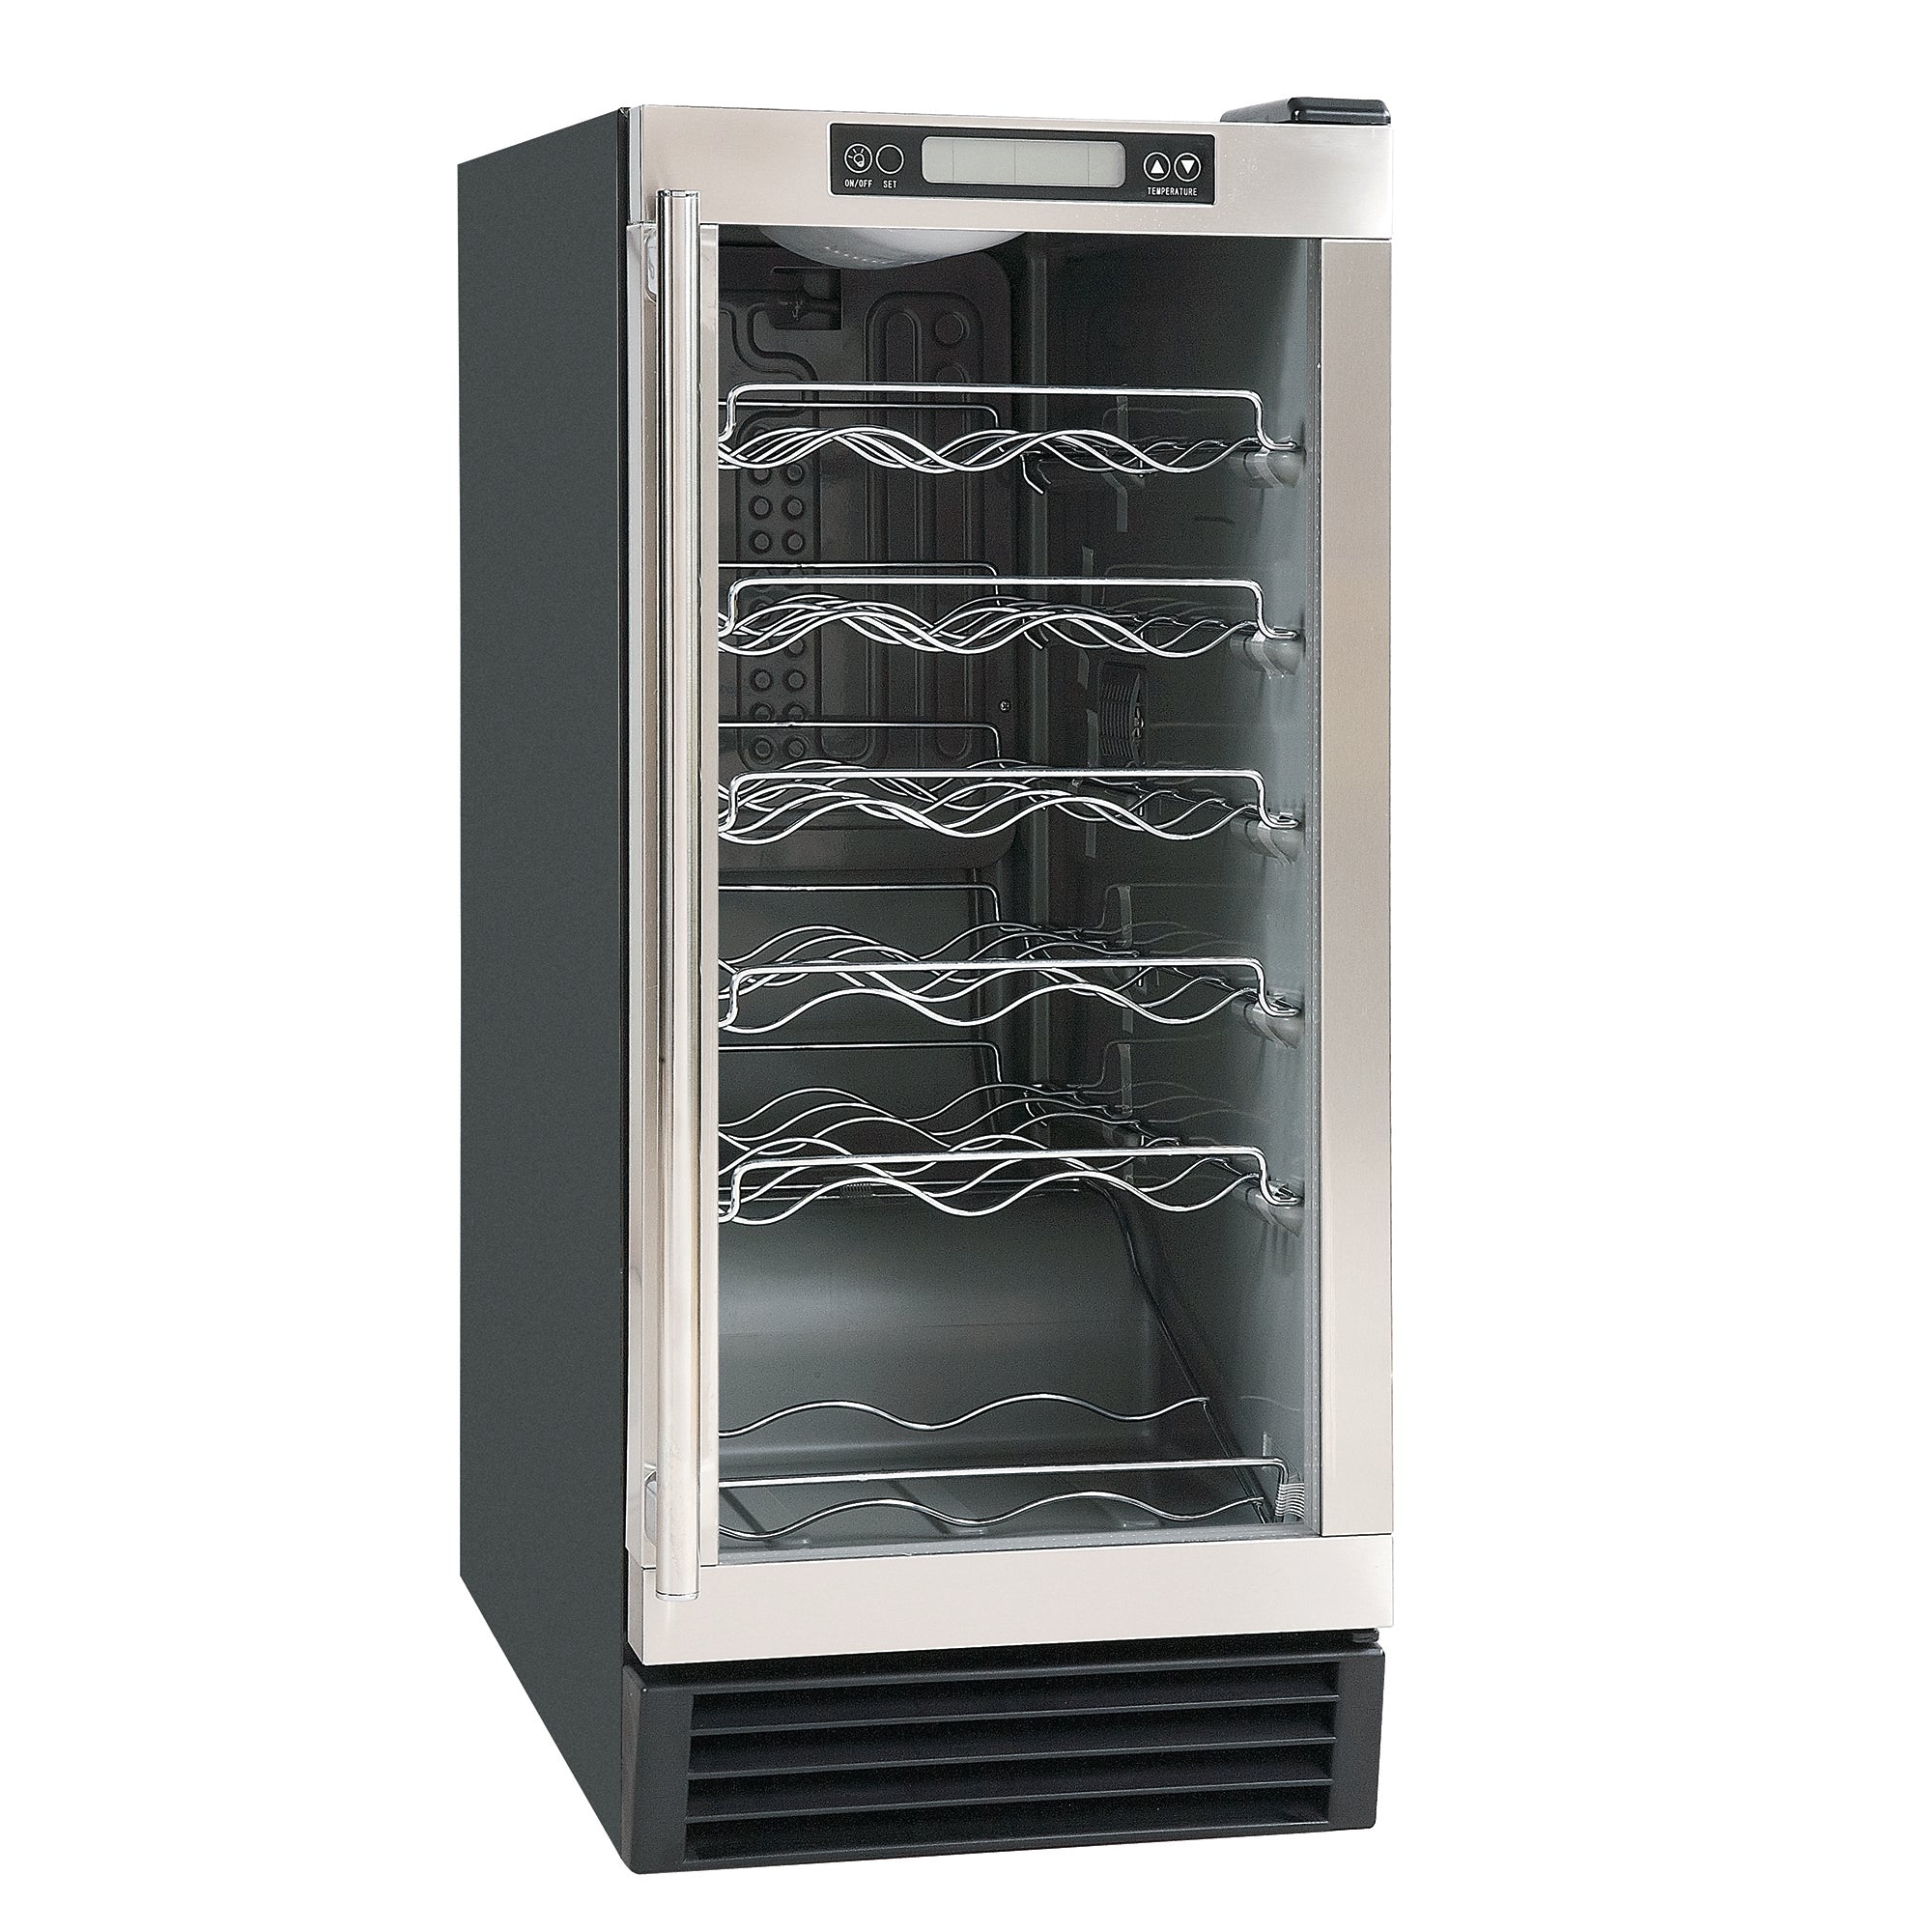 Maxx Ice - MCWC28, Maxx Ice Indoor Wine Cooler with Glass Door, 3 cu. ft. Capacity, in Stainless Steel